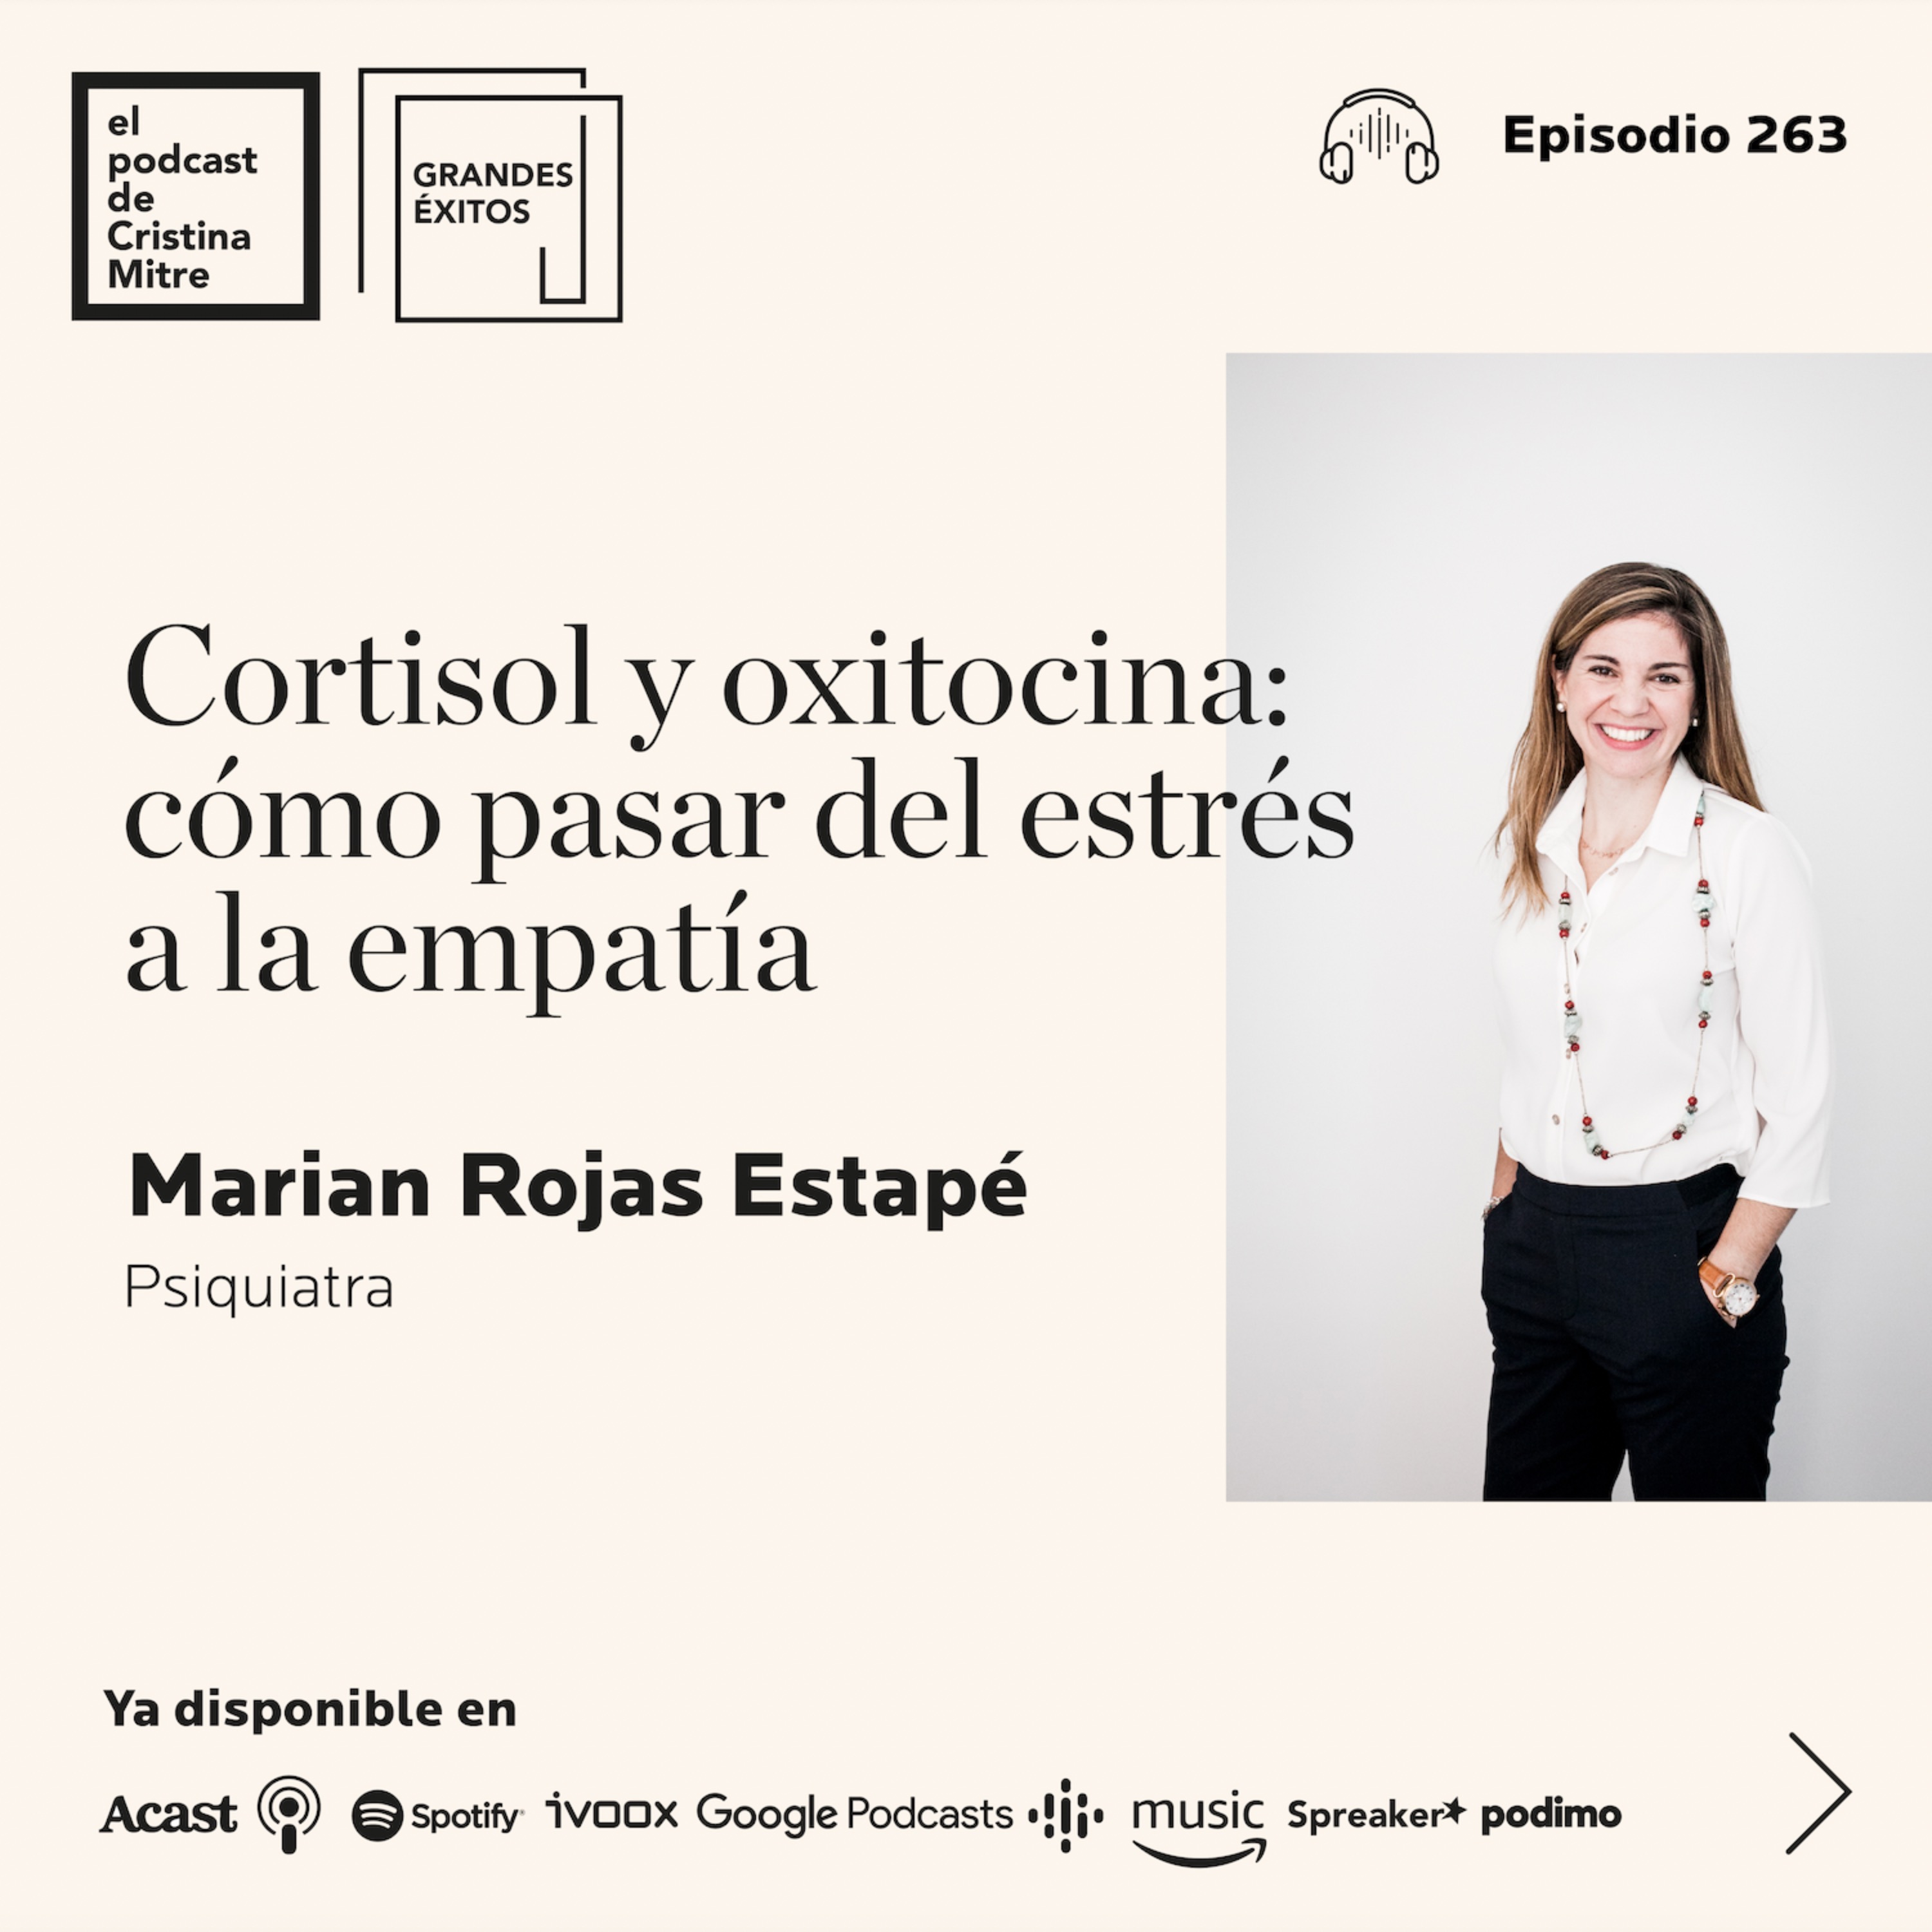 Cortisol y oxitocina: cómo pasar del estrés a la empatía, con Marian Rojas Estapé. Episodio 263